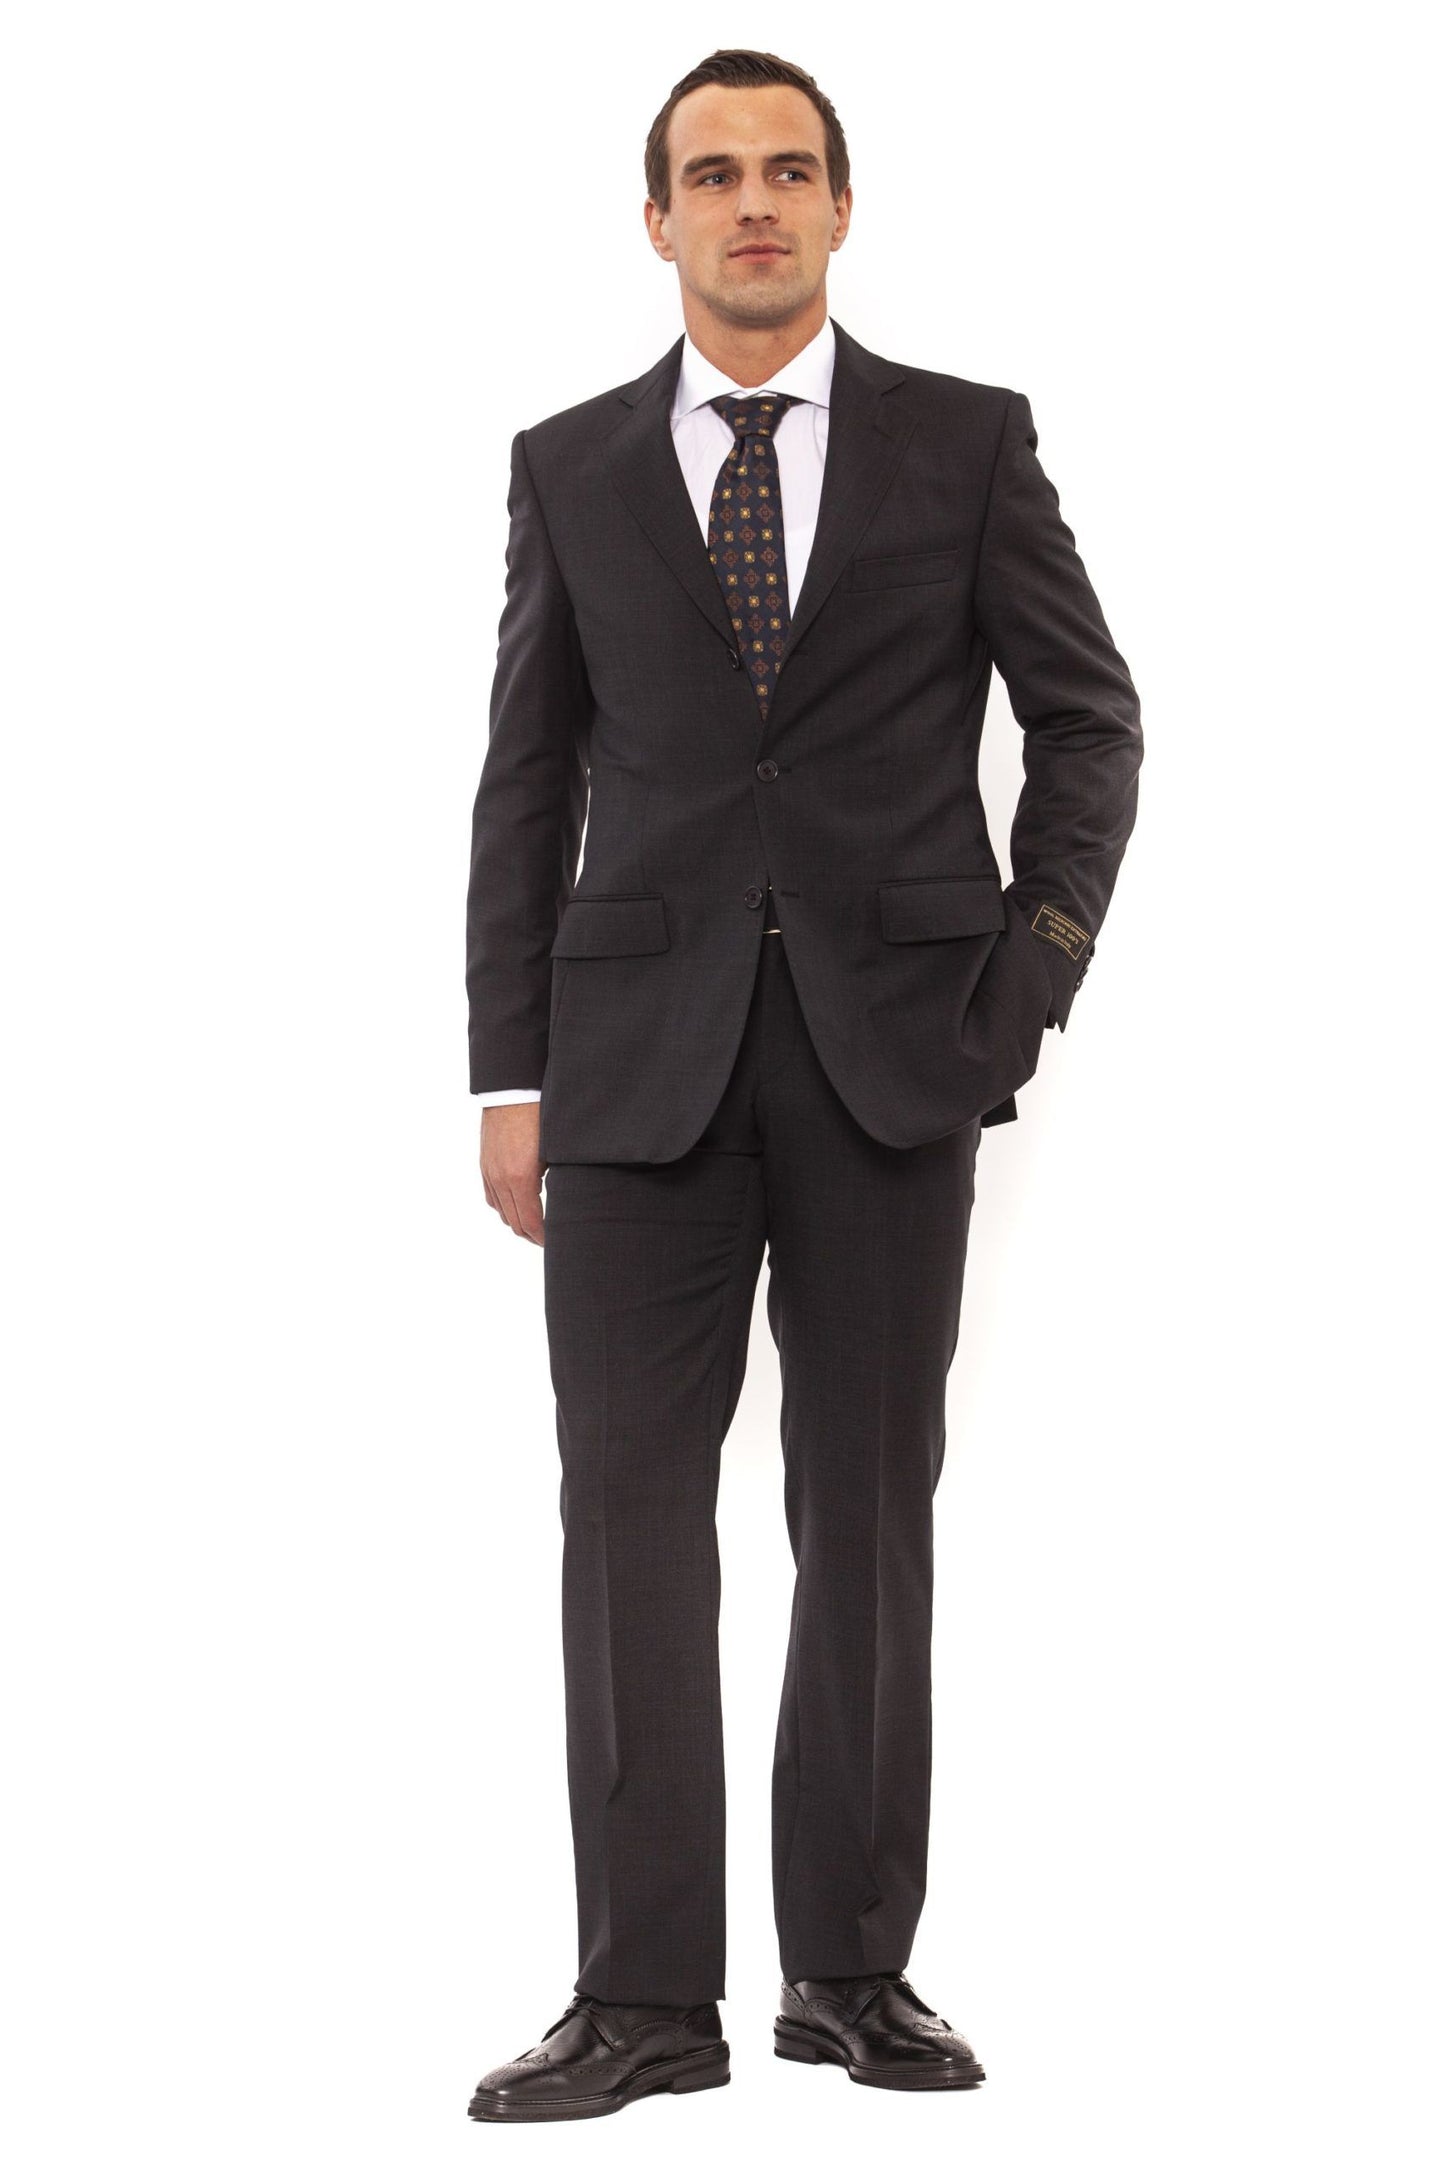 Elegant Classic Fit Gray Suit